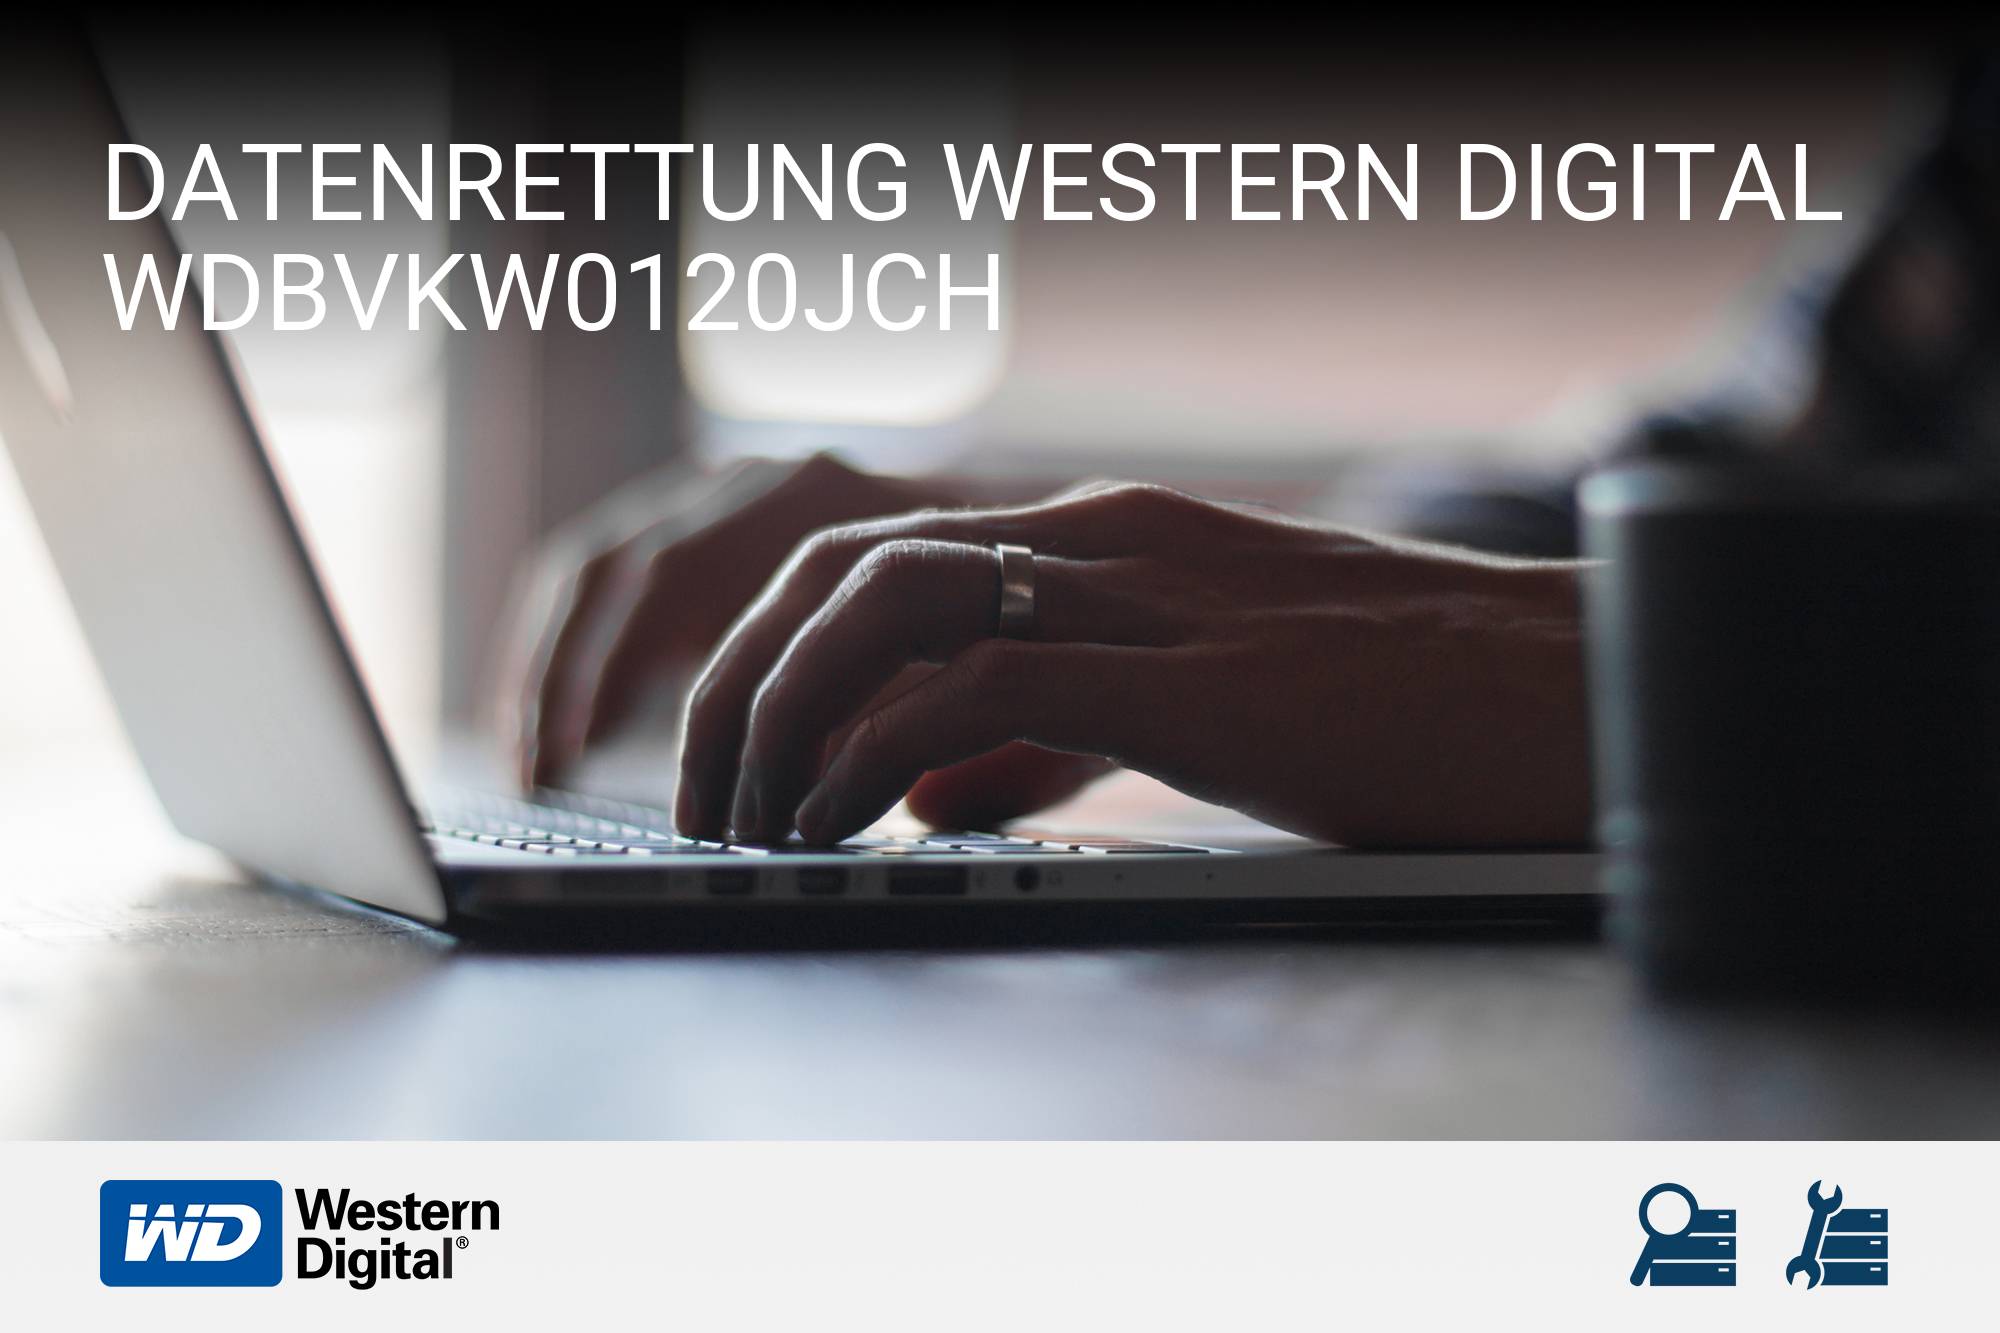 Western Digital WDBVKW0120JCH